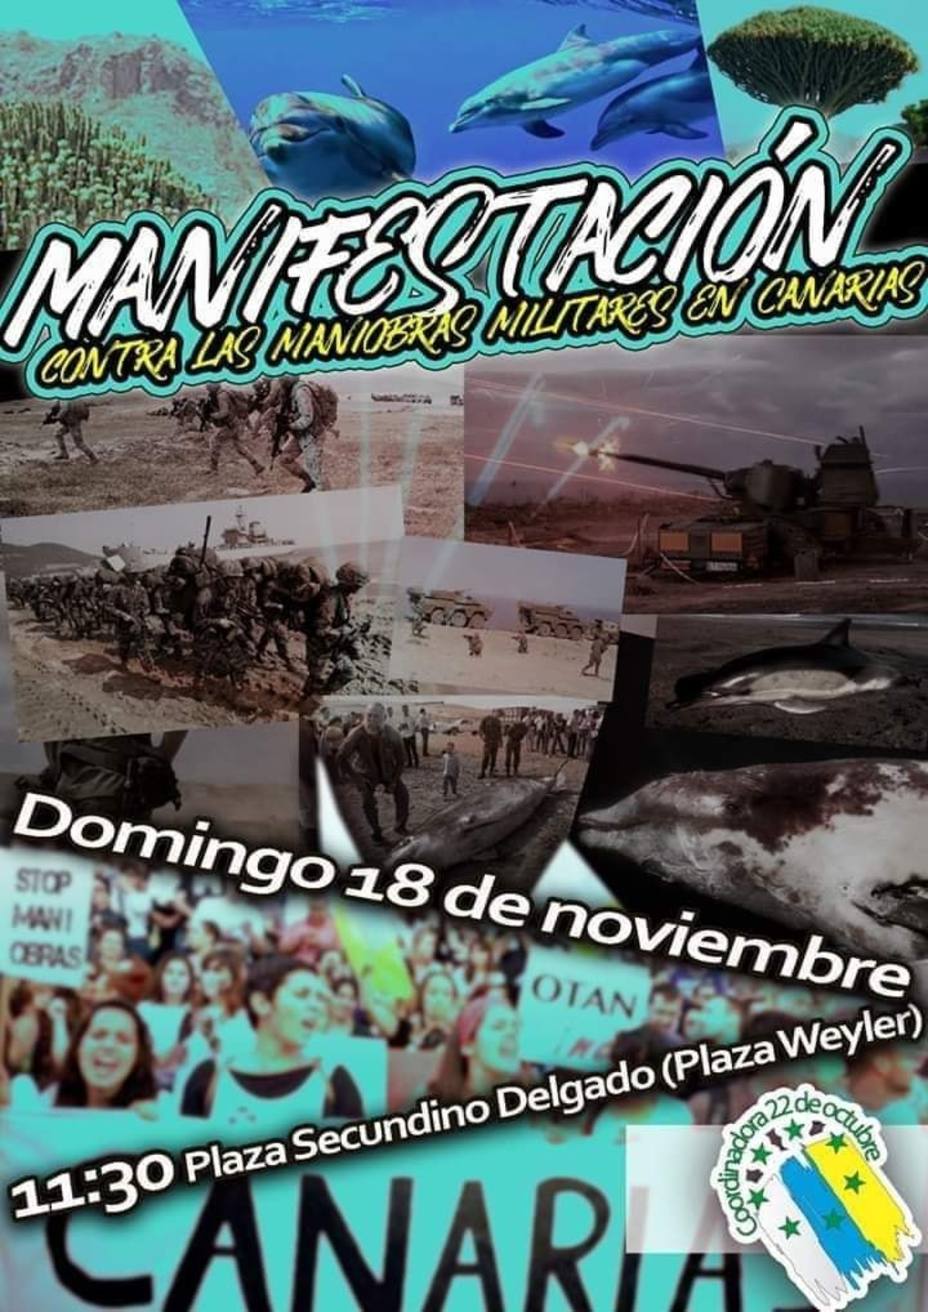 La Coordinadora 22 de octubre convoca una manifestación contra las maniobras militares de la OTAN en Canarias